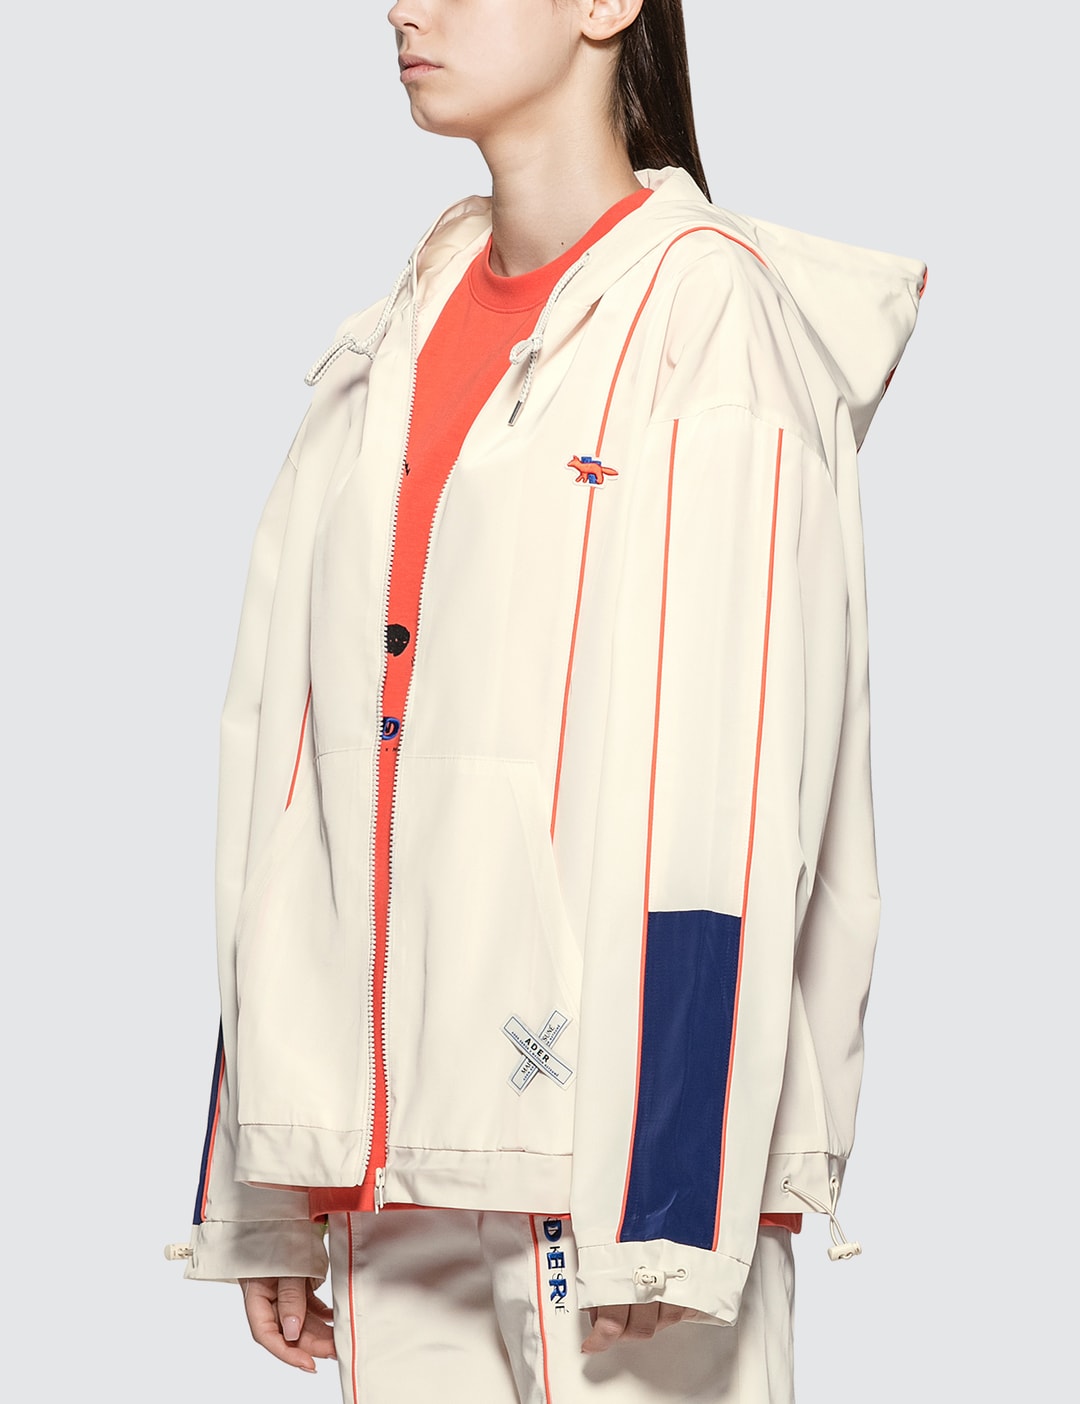 Ader Error X Maison Kitsune Line Zip-up Jacket Placeholder Image